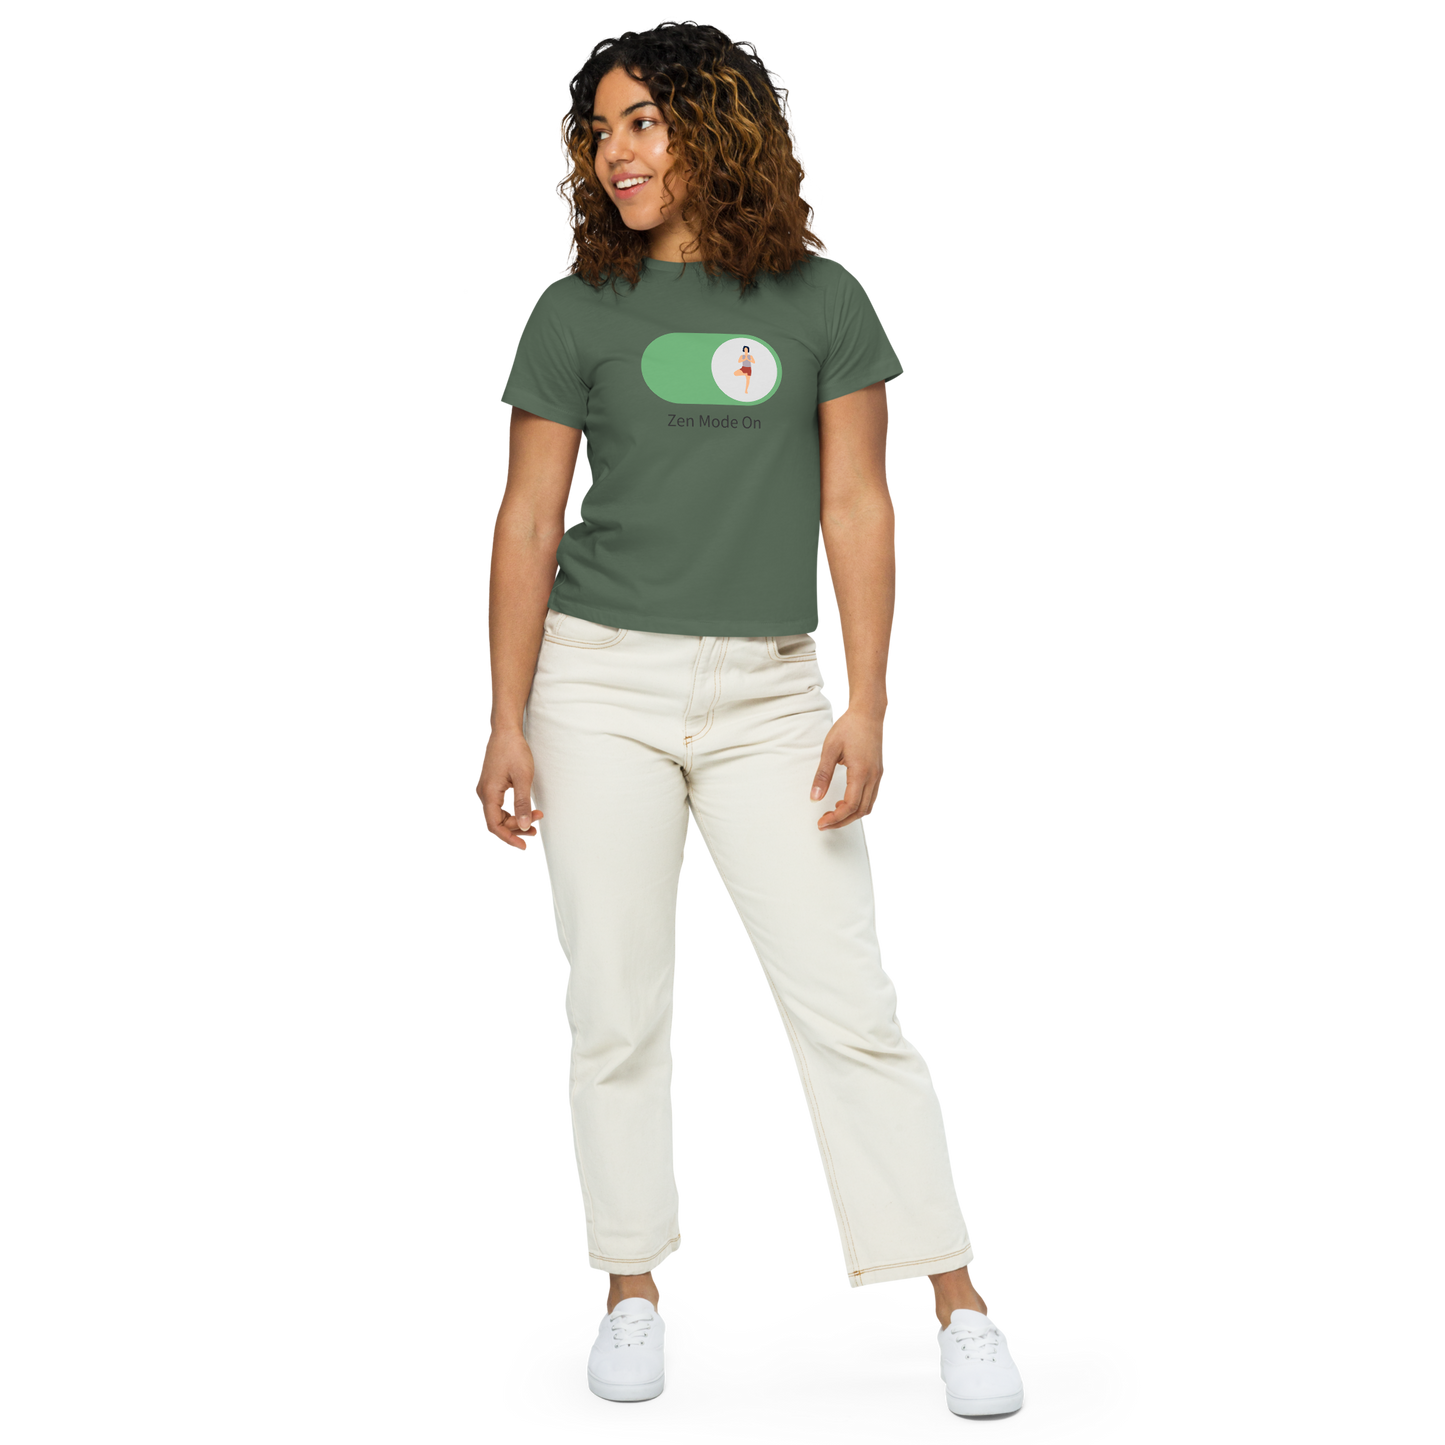 Camiseta de mujer de cintura alta con frase "Zen Mode On"